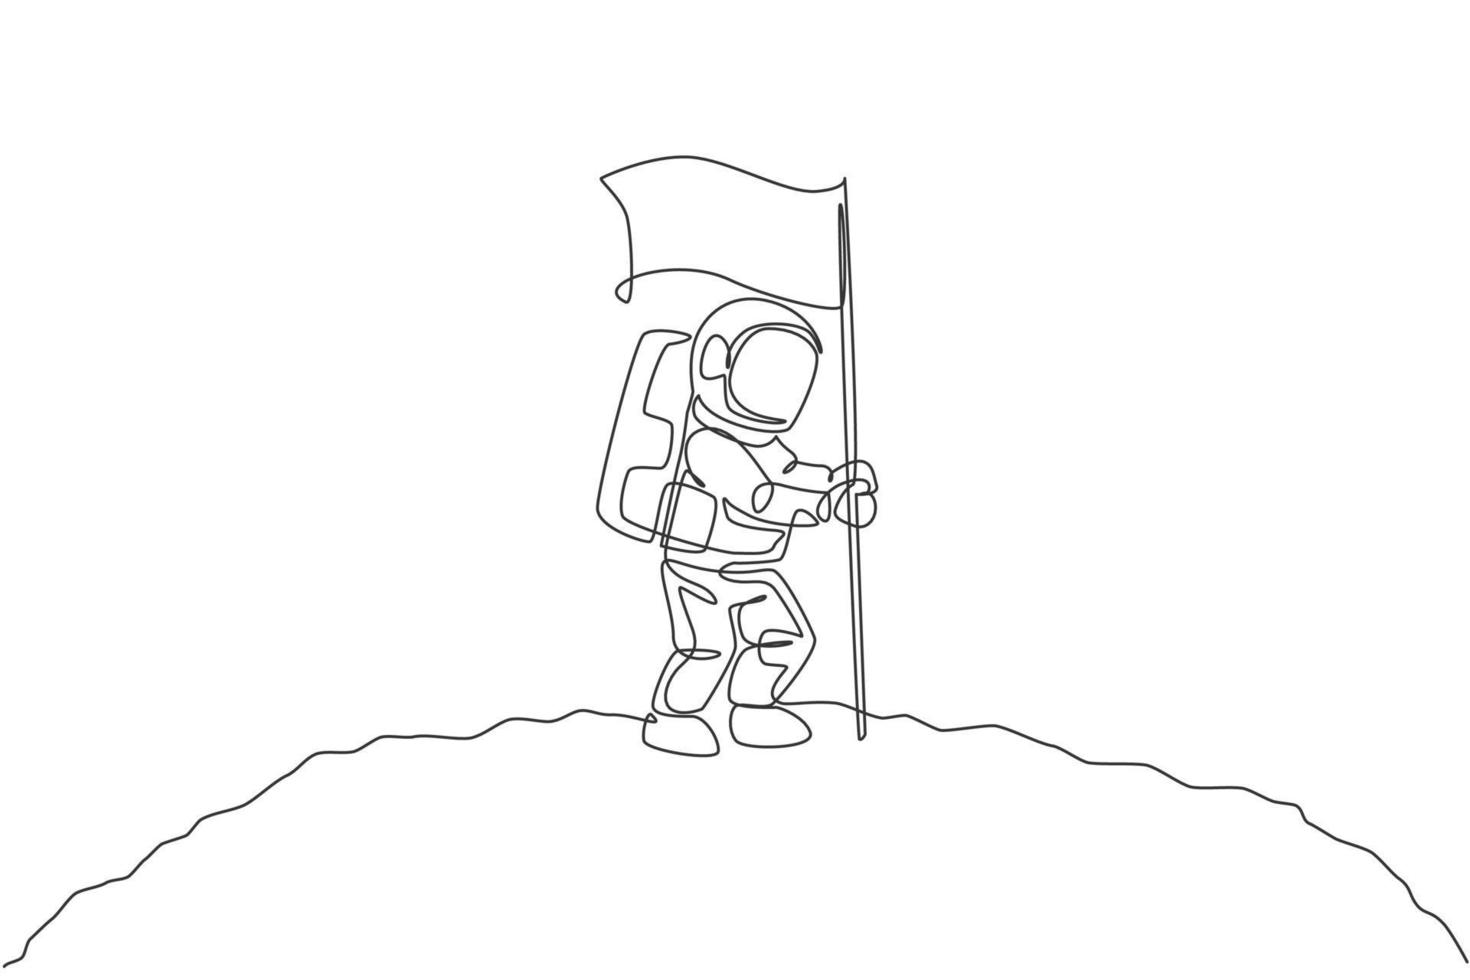 un seul dessin d'astronaute de l'espace explorant la galaxie cosmique et plantant un drapeau sur l'illustration vectorielle de la surface de la lune. concept de fiction de la vie dans l'espace extra-atmosphérique fantastique. conception de dessin en ligne continue vecteur